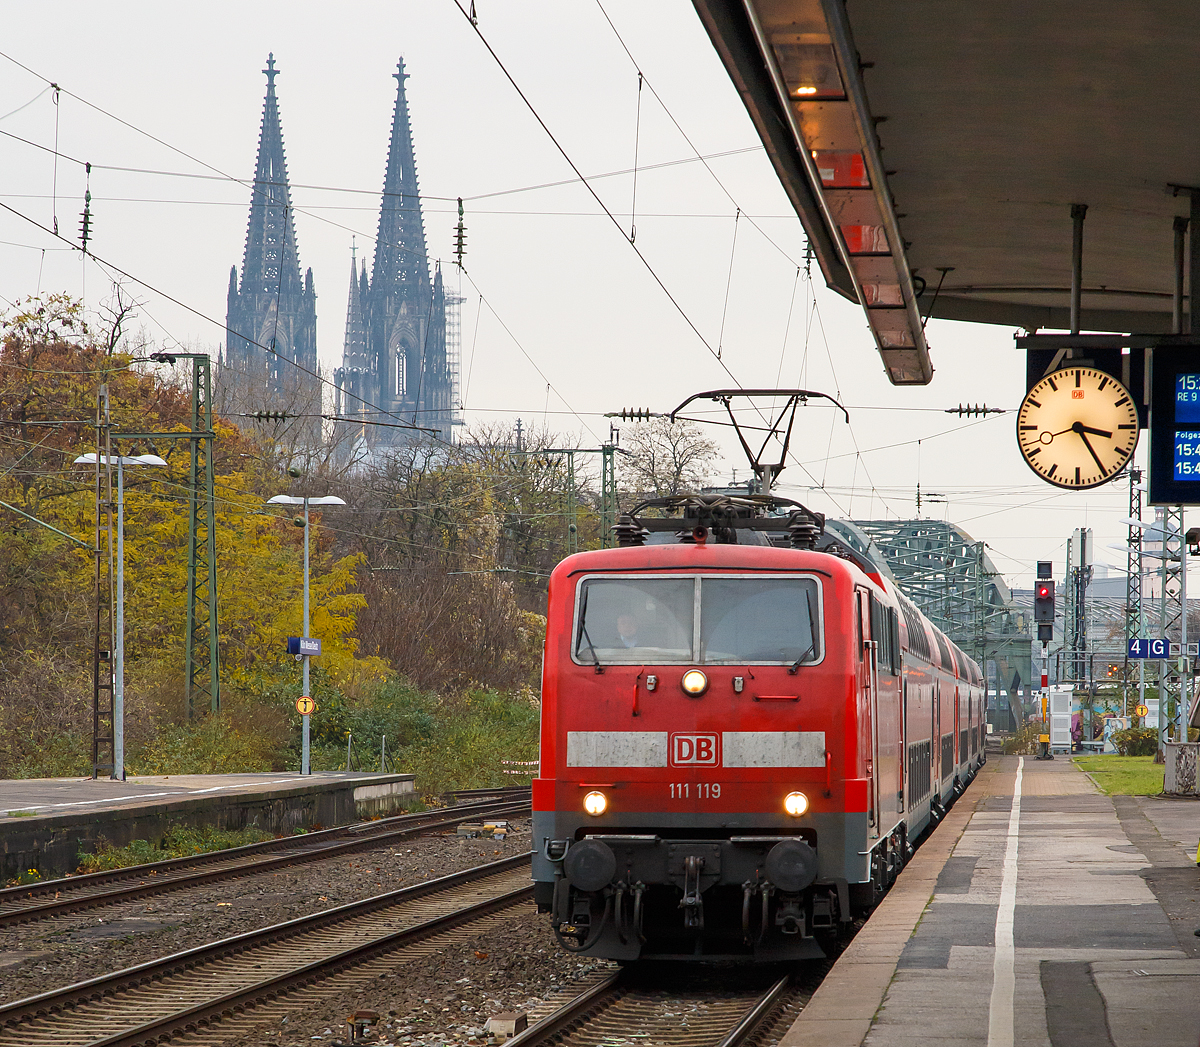 
Die 111 119-4 (91 80 6111 119-4 D-DB) der DB Regio mit dem RE 9 (rsx - Rhein-Sieg-Express) Aachen - Köln - Siegen erreicht am 26.11.2016 den Bahnhof Köln Messe/Deutz.

Die Lok wurde 1979 bei Krauss-Maffei AG in München unter der Fabriknummer 19851 gebaut, der elektrische Teil ist von Siemens.